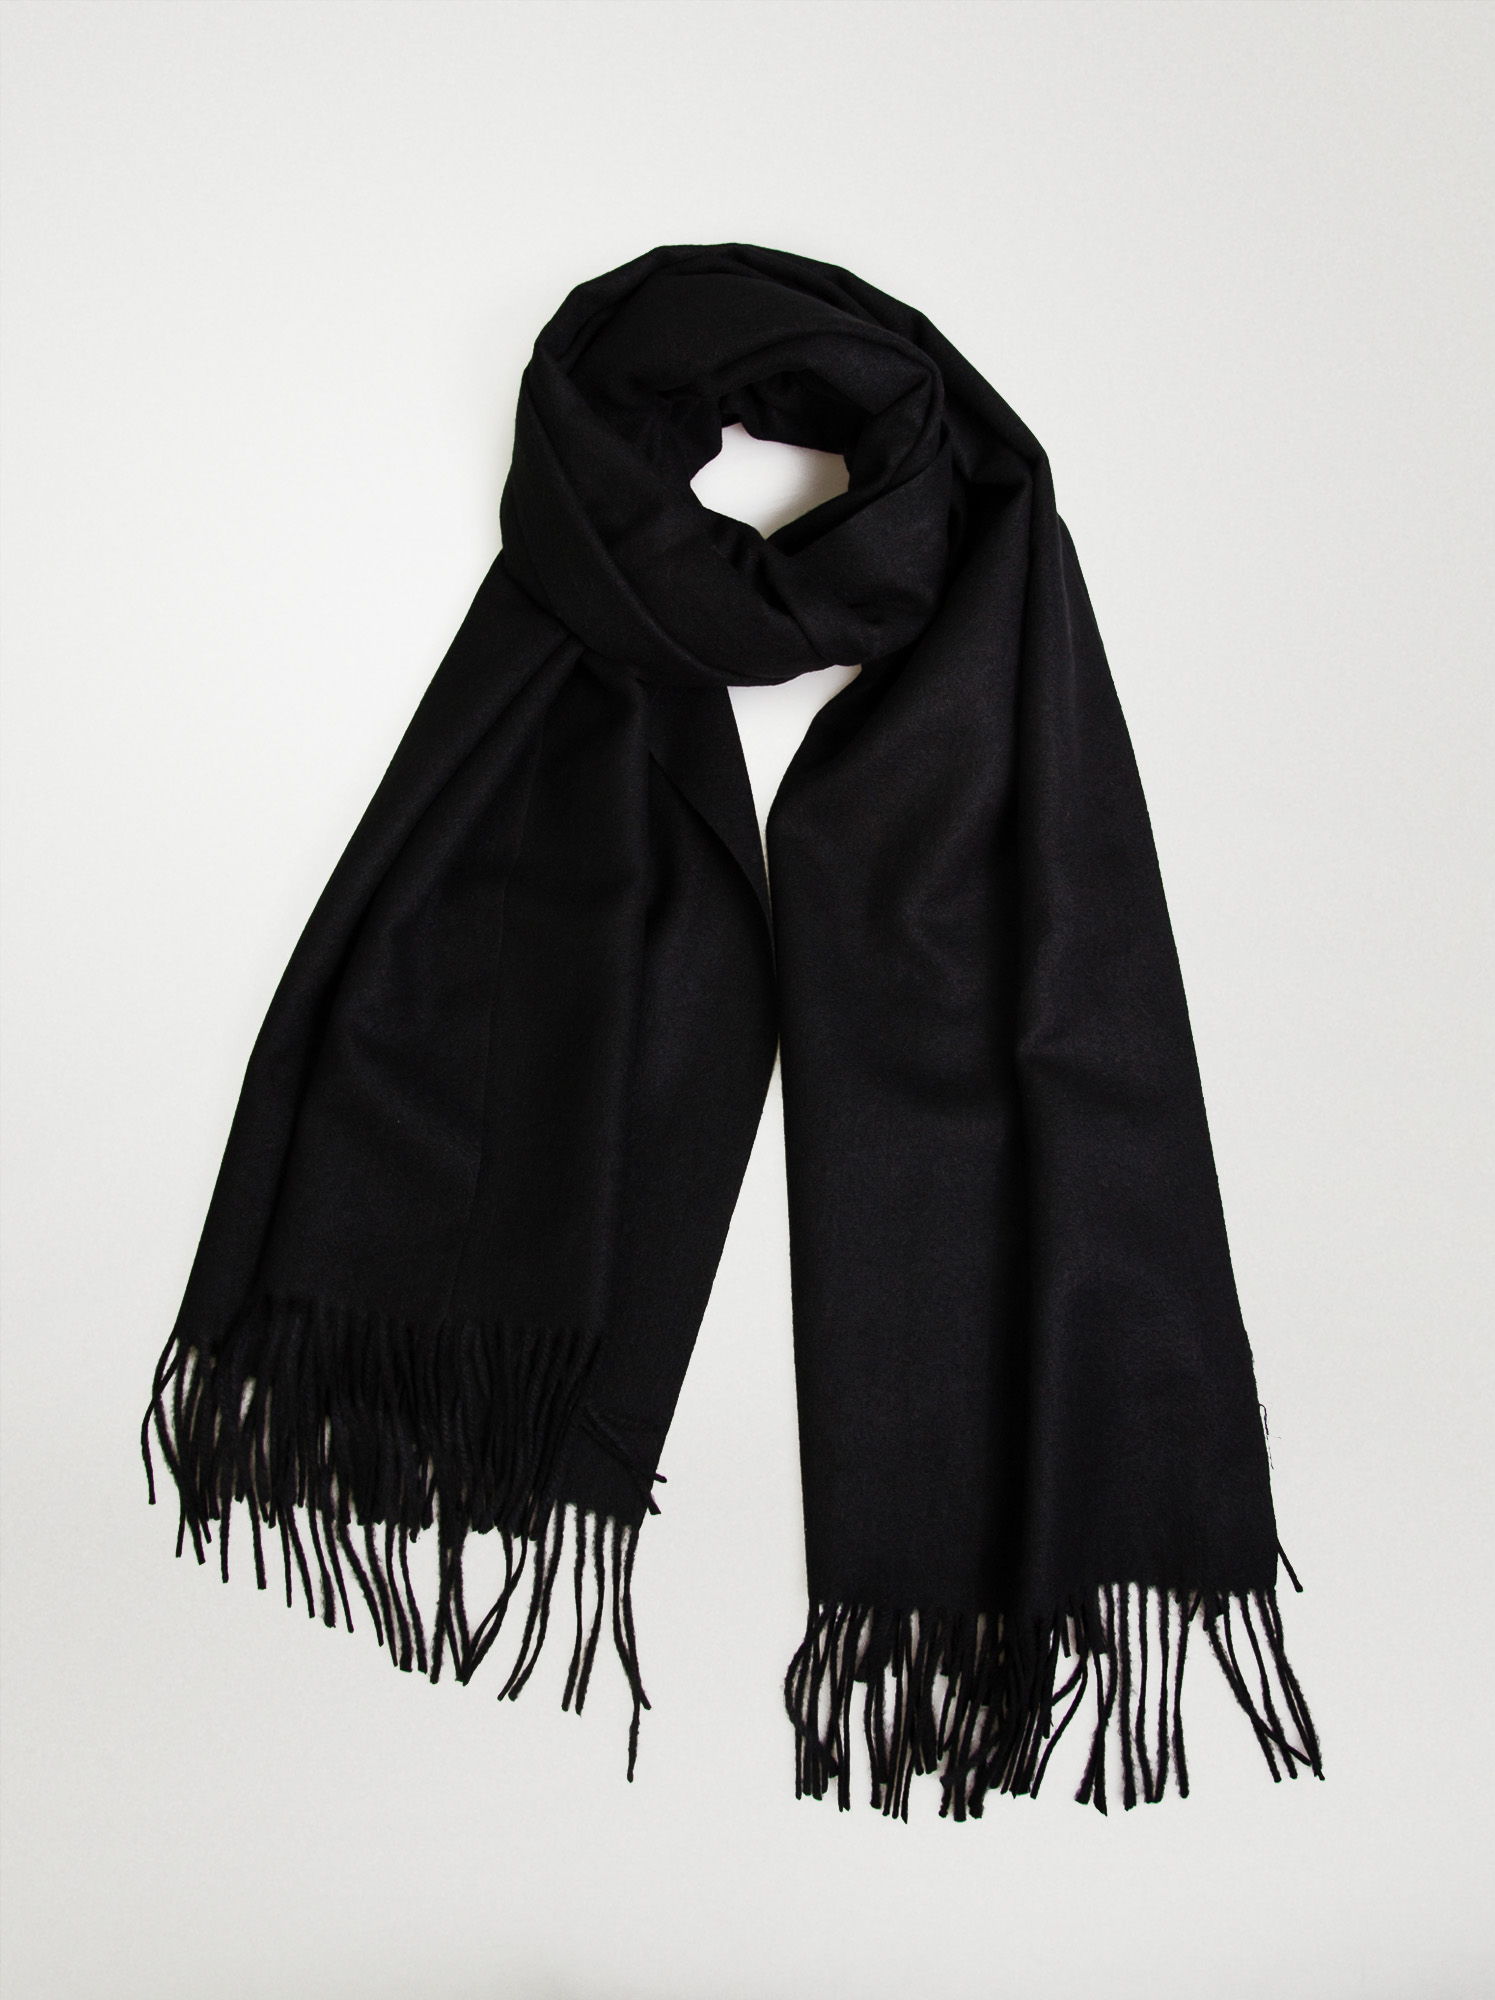 Black scarf - Allora image 1